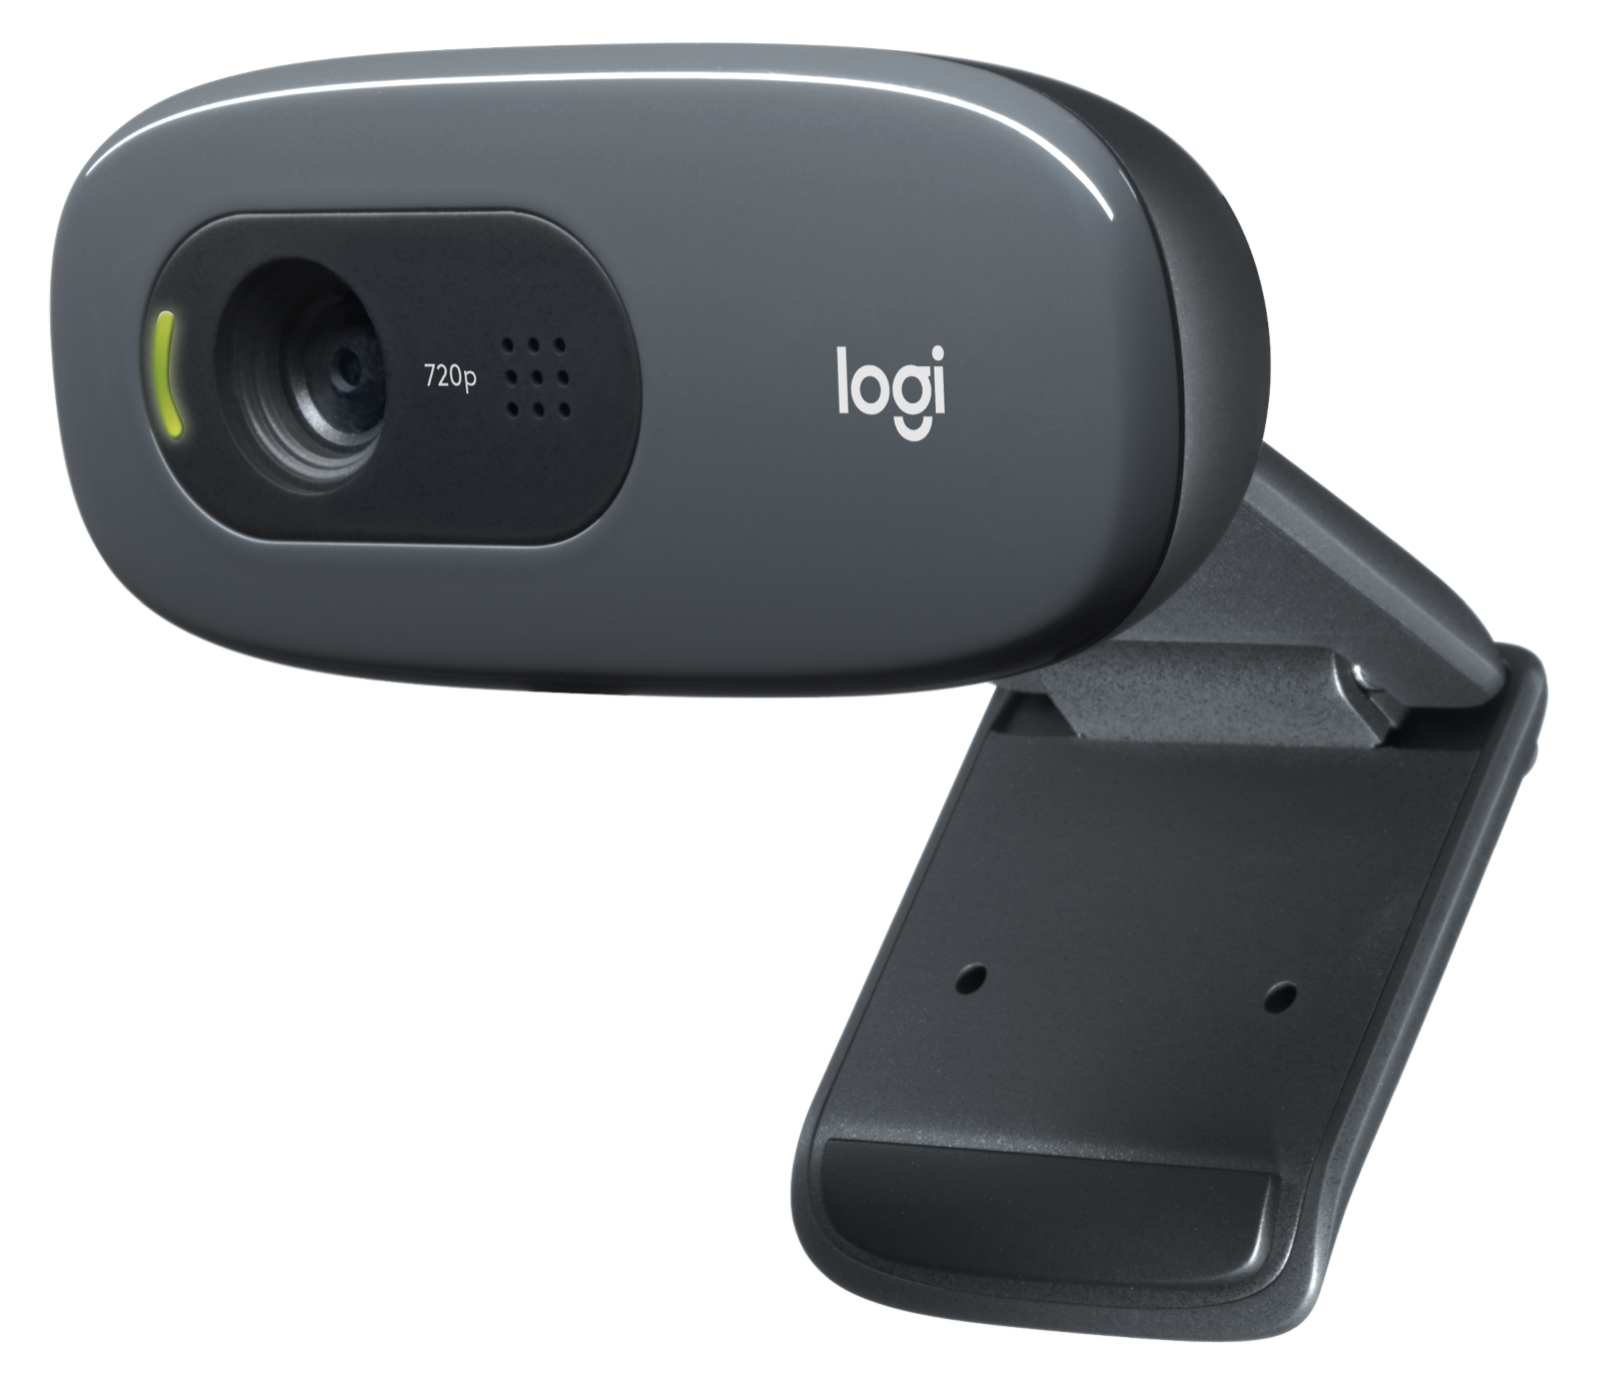 Vallen Lol Landelijk Logitech C270 HD Webcam, 720p Video with Noise Reducing Mic